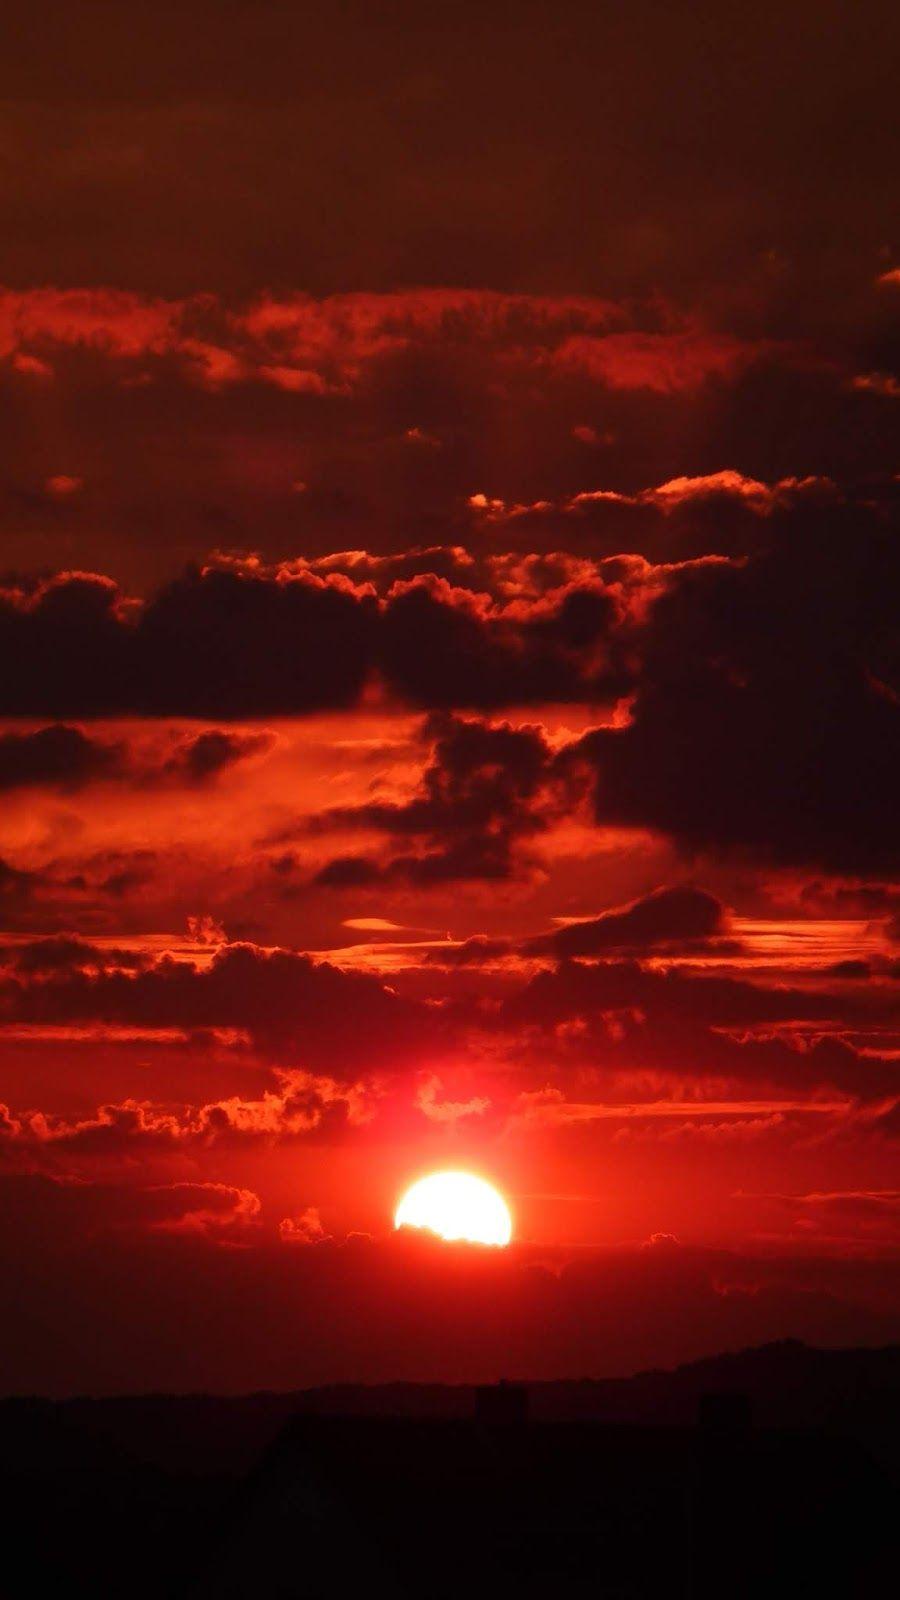 Bầu trời đỏ tuyệt đẹp như trong tranh vẽ! Một hình ảnh bầu trời đỏ tươi rực sau lúc hoàng hôn sẽ đem đến cho bạn cảm giác tuyệt vời và mang đến cho không khí ngập tràn sức sống.